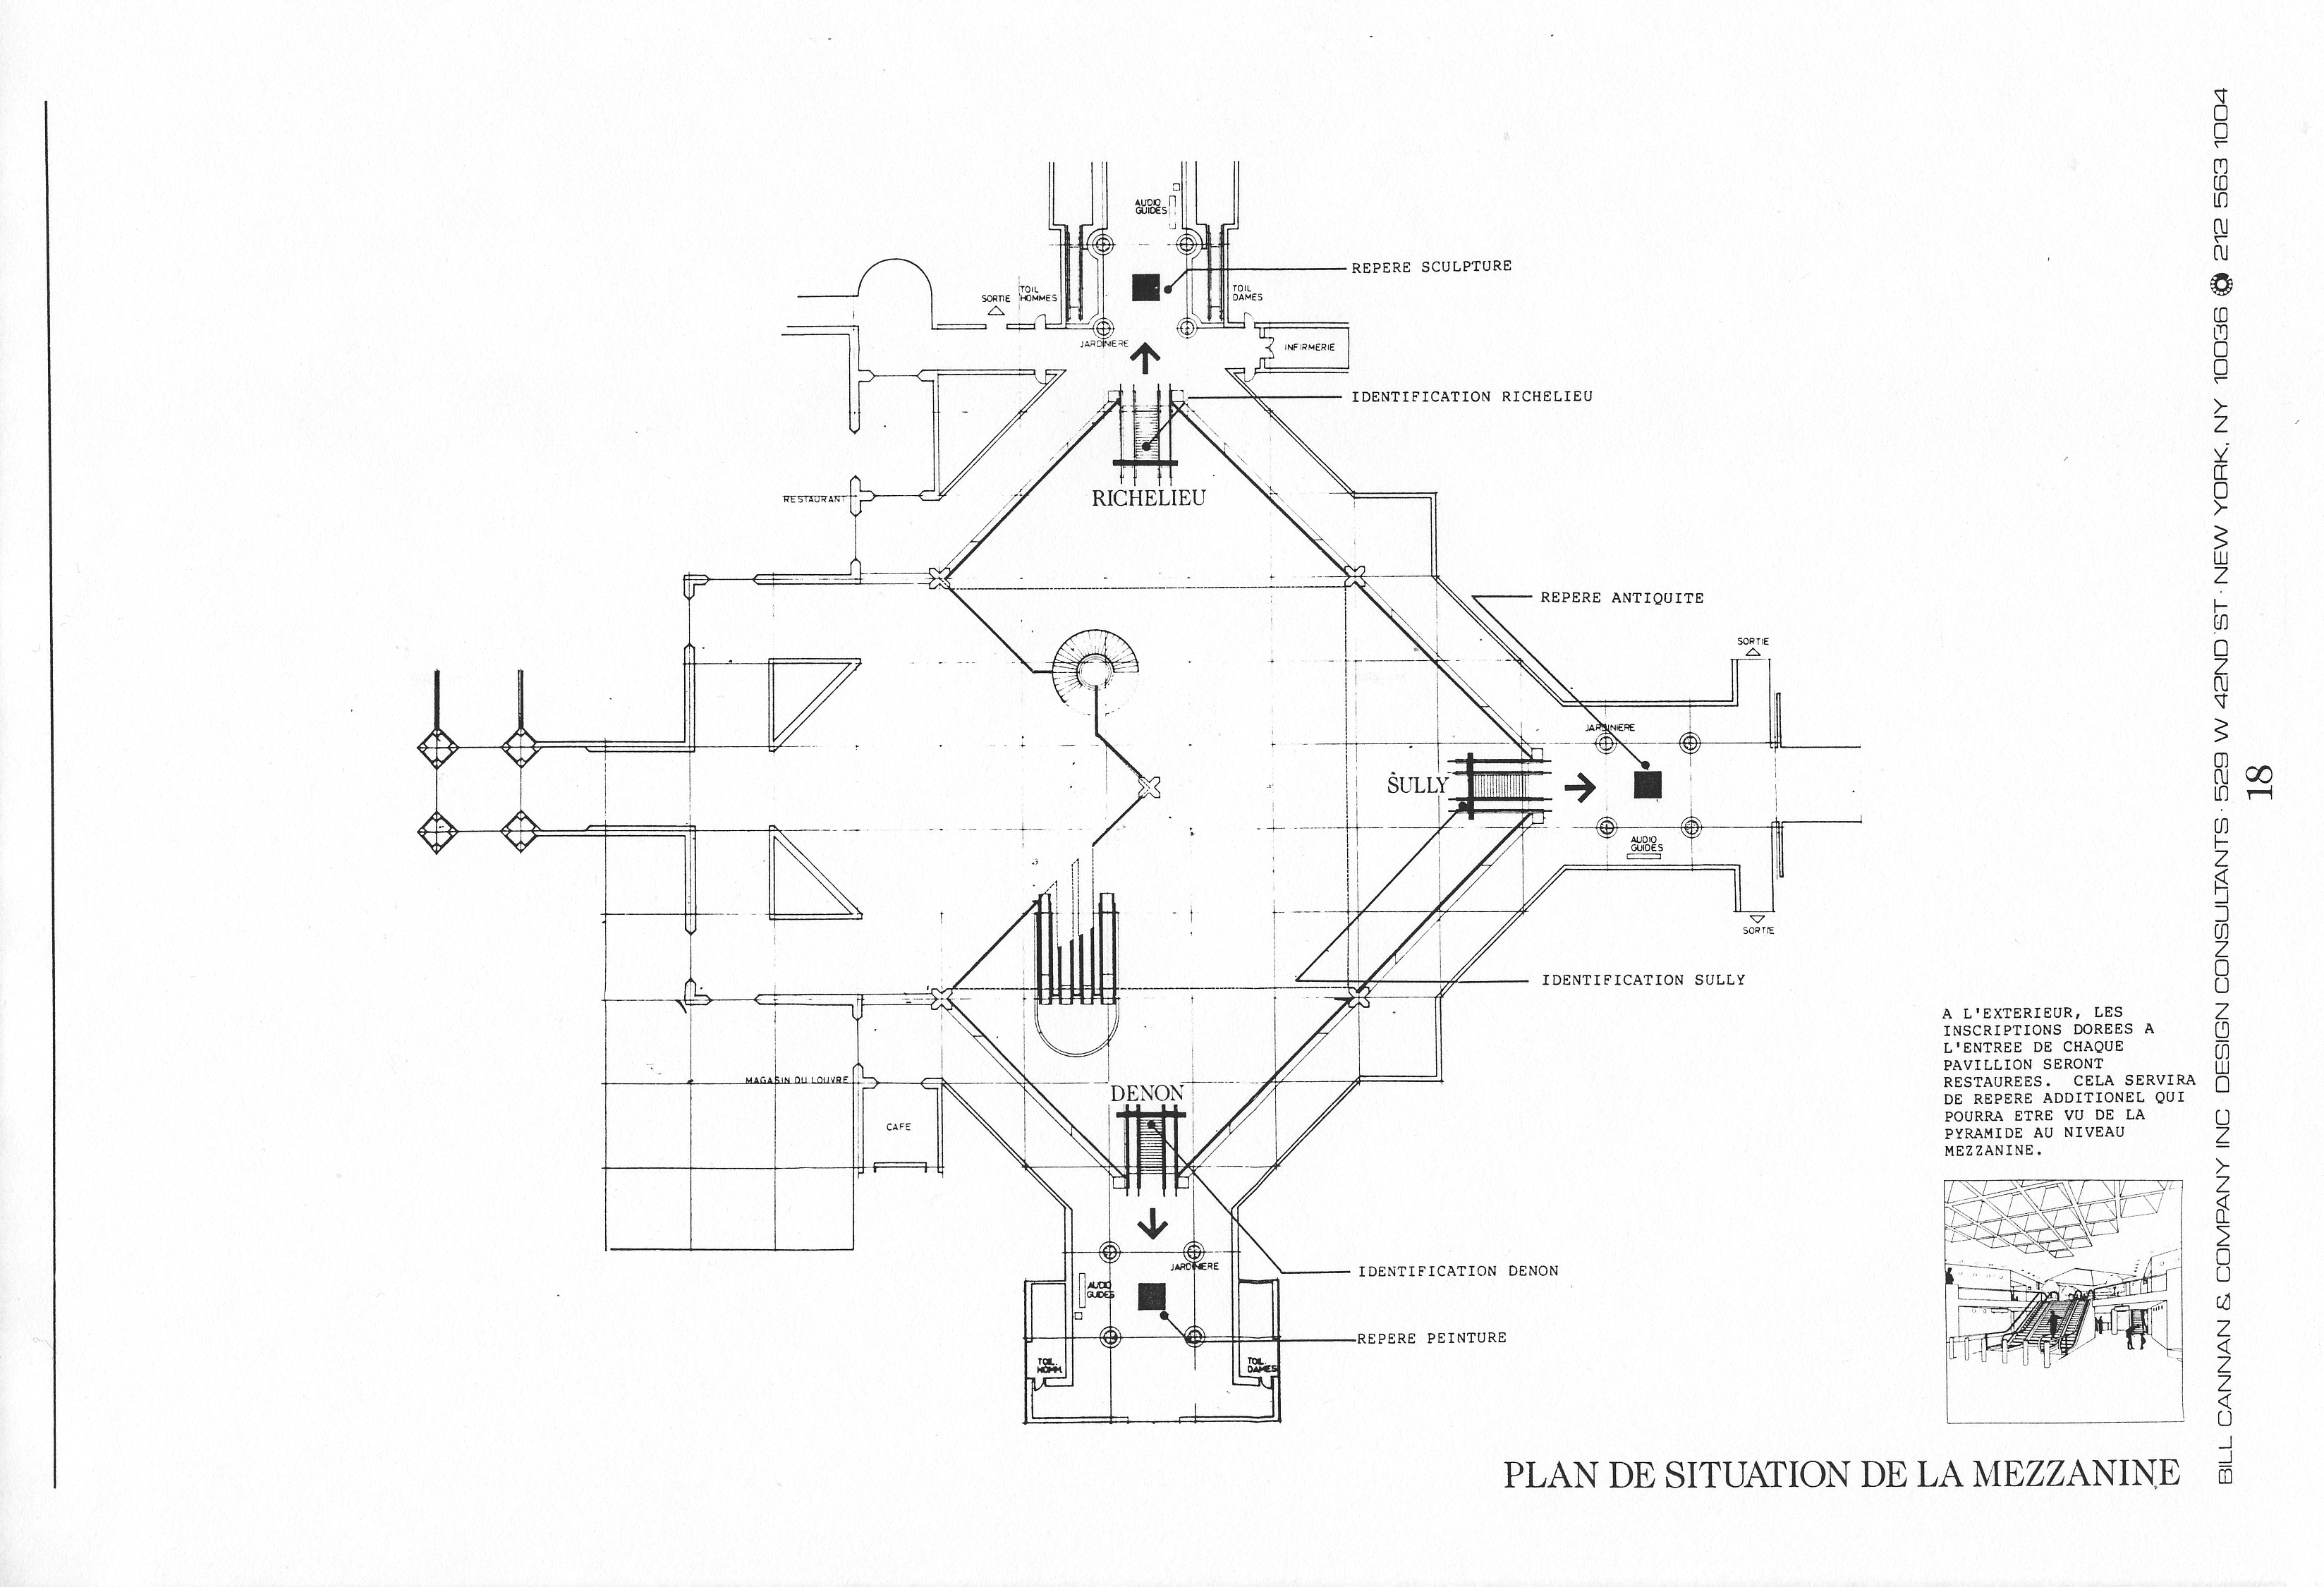 Louvre proposal sketch 19.